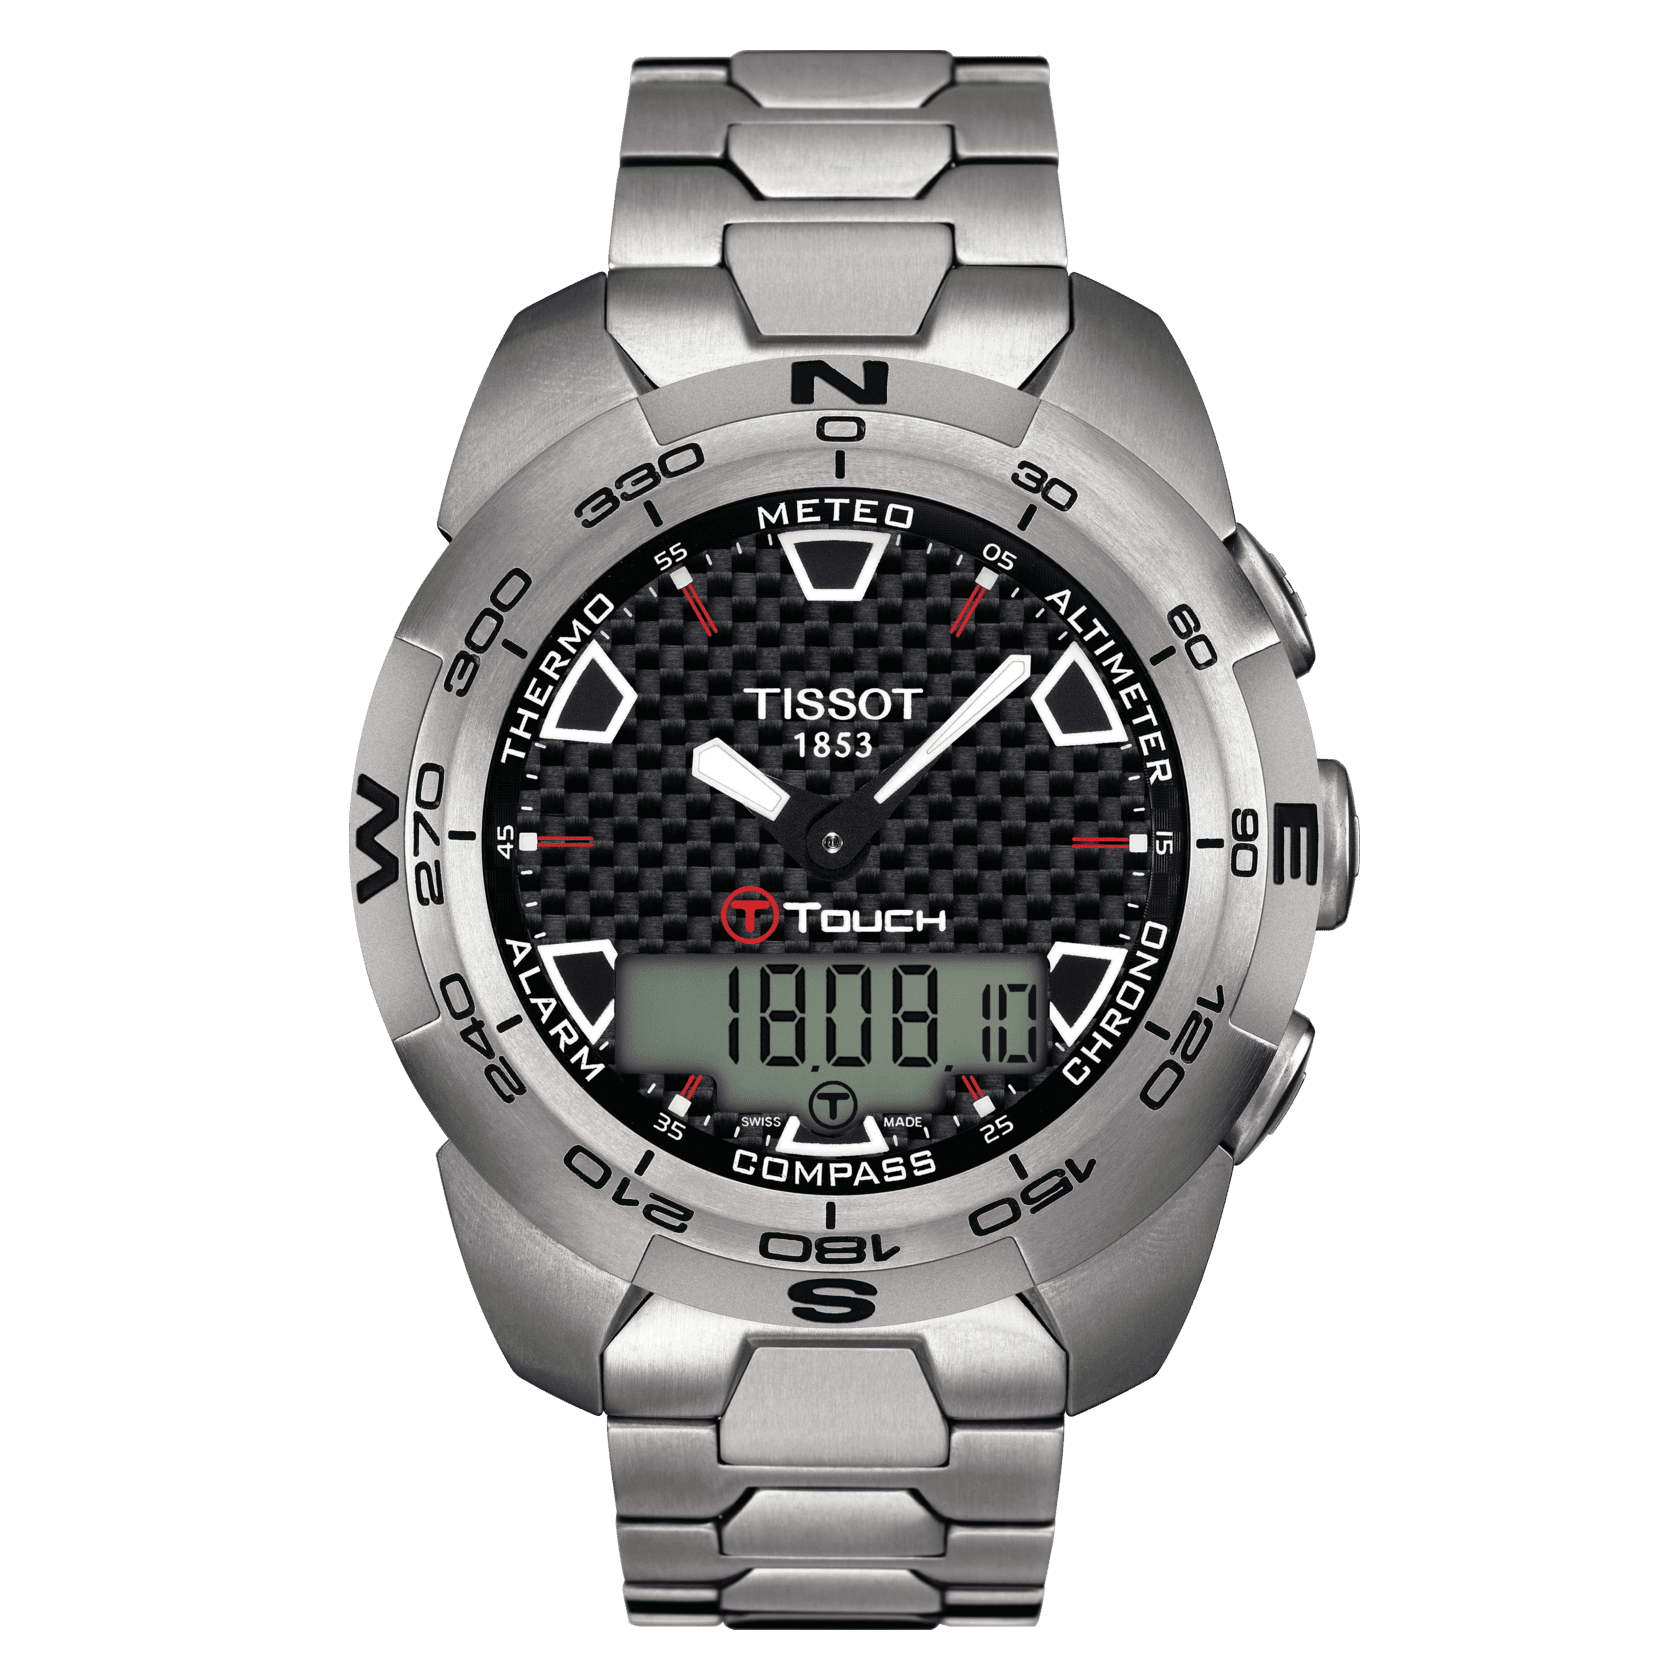 Quality Replica Rado Watches